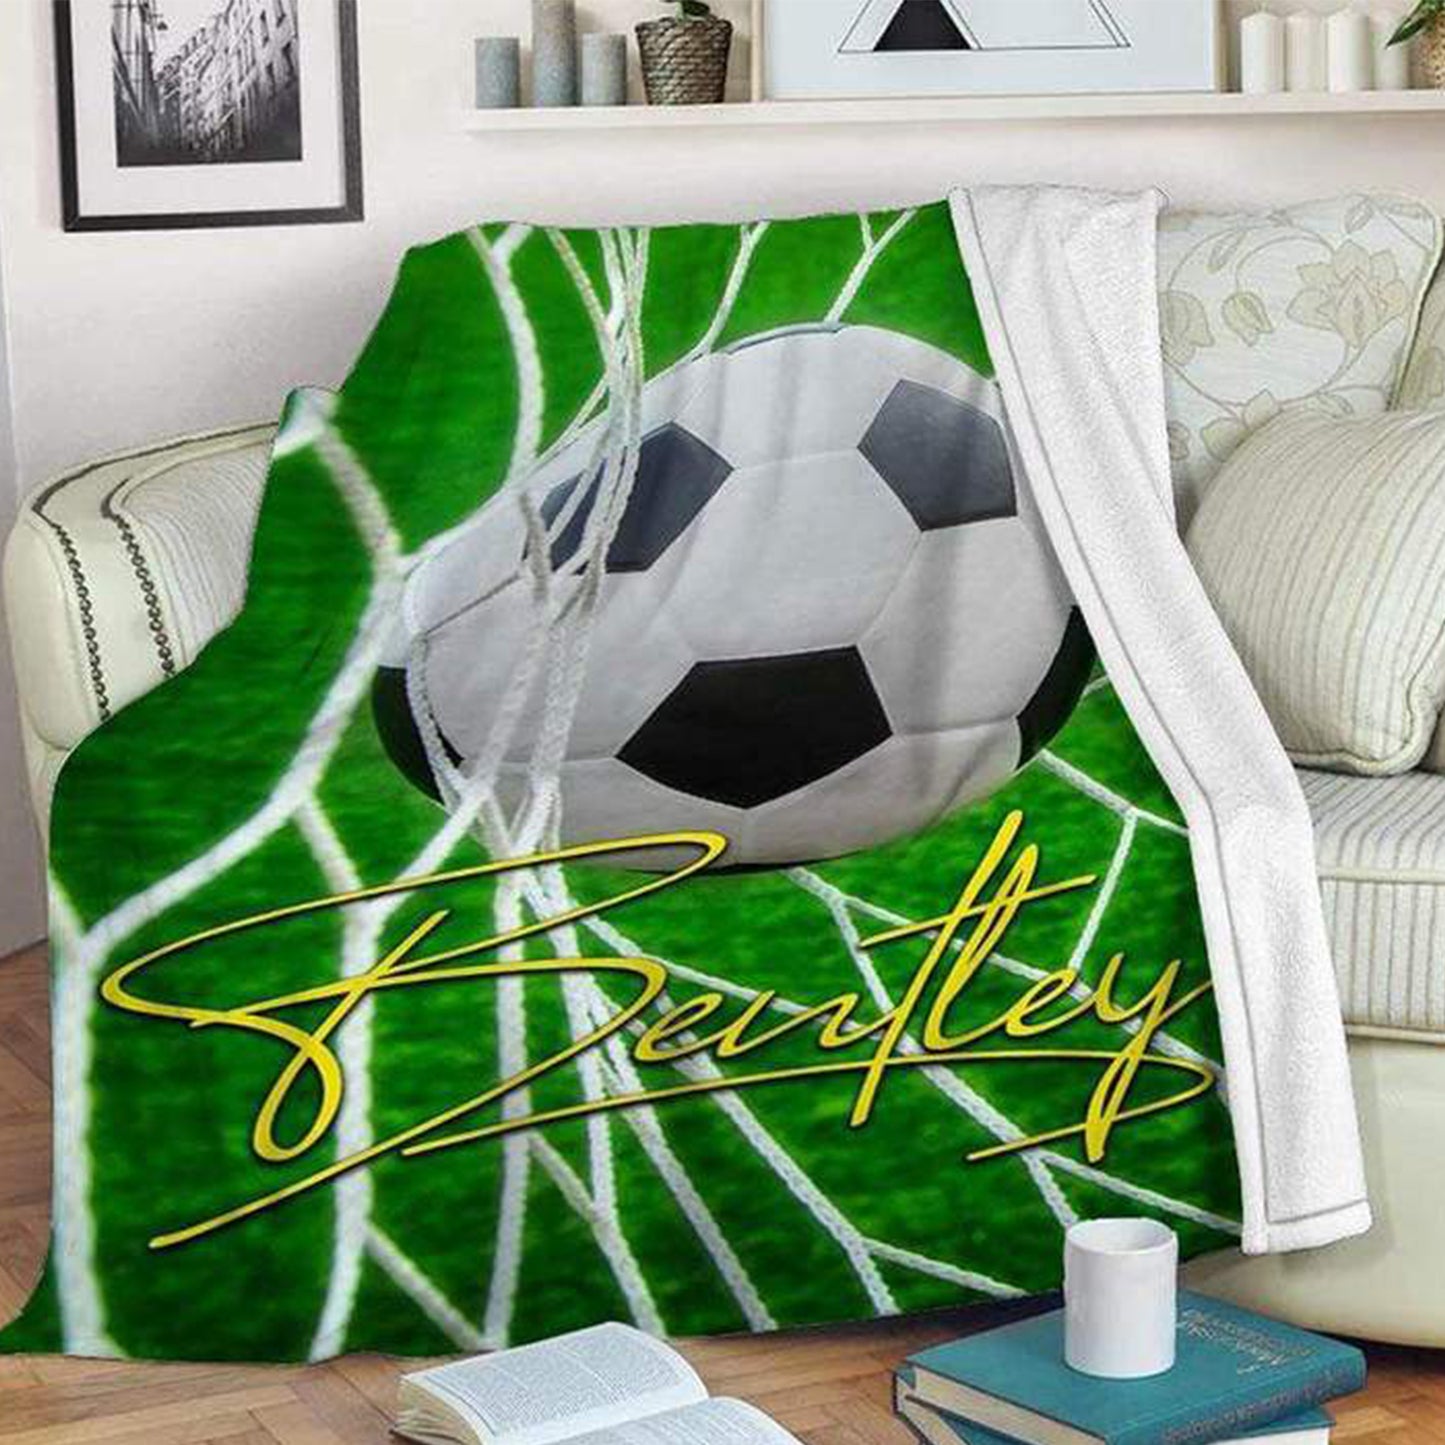 Blanket Soccer Ball And Goal Custom Blankets With Name Fleece Blanket,  Soccer Blankets, Custom Soccer Gifts For Coach And Soccer Players, Custom Birthday Gift For Soccer Player